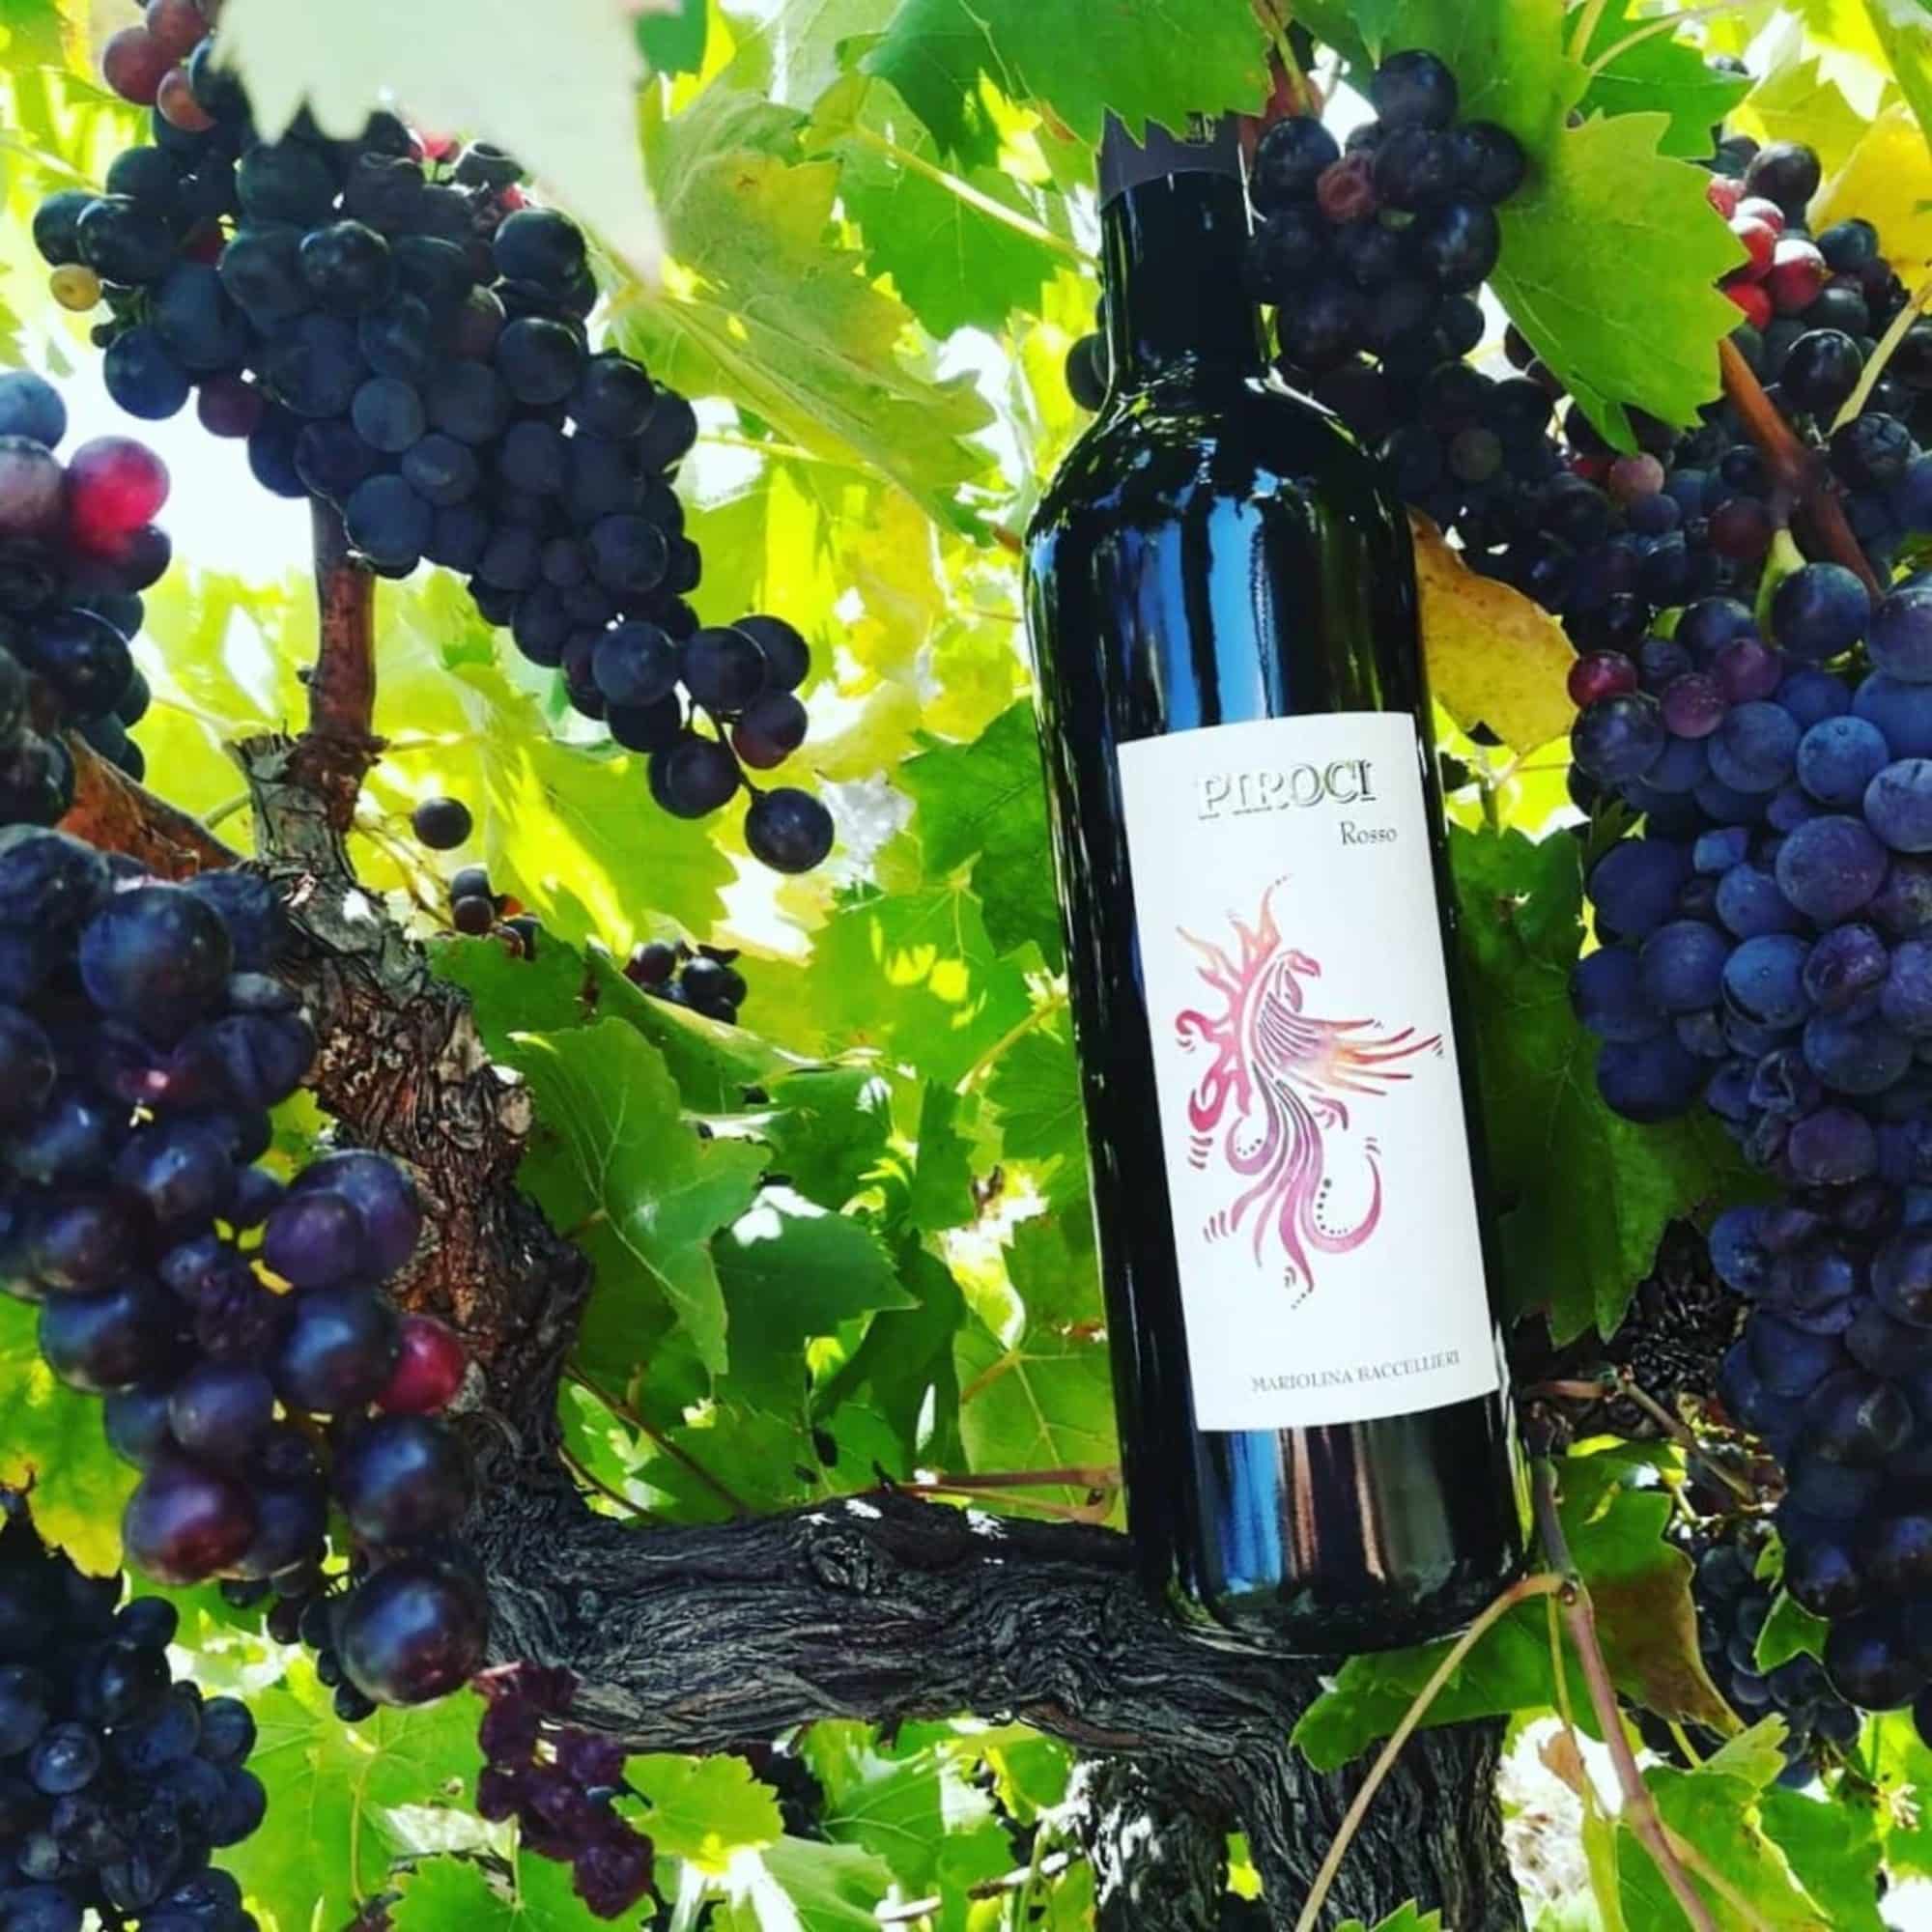 Explorez nos vignobles calabrais - winery vignoble baccellieri